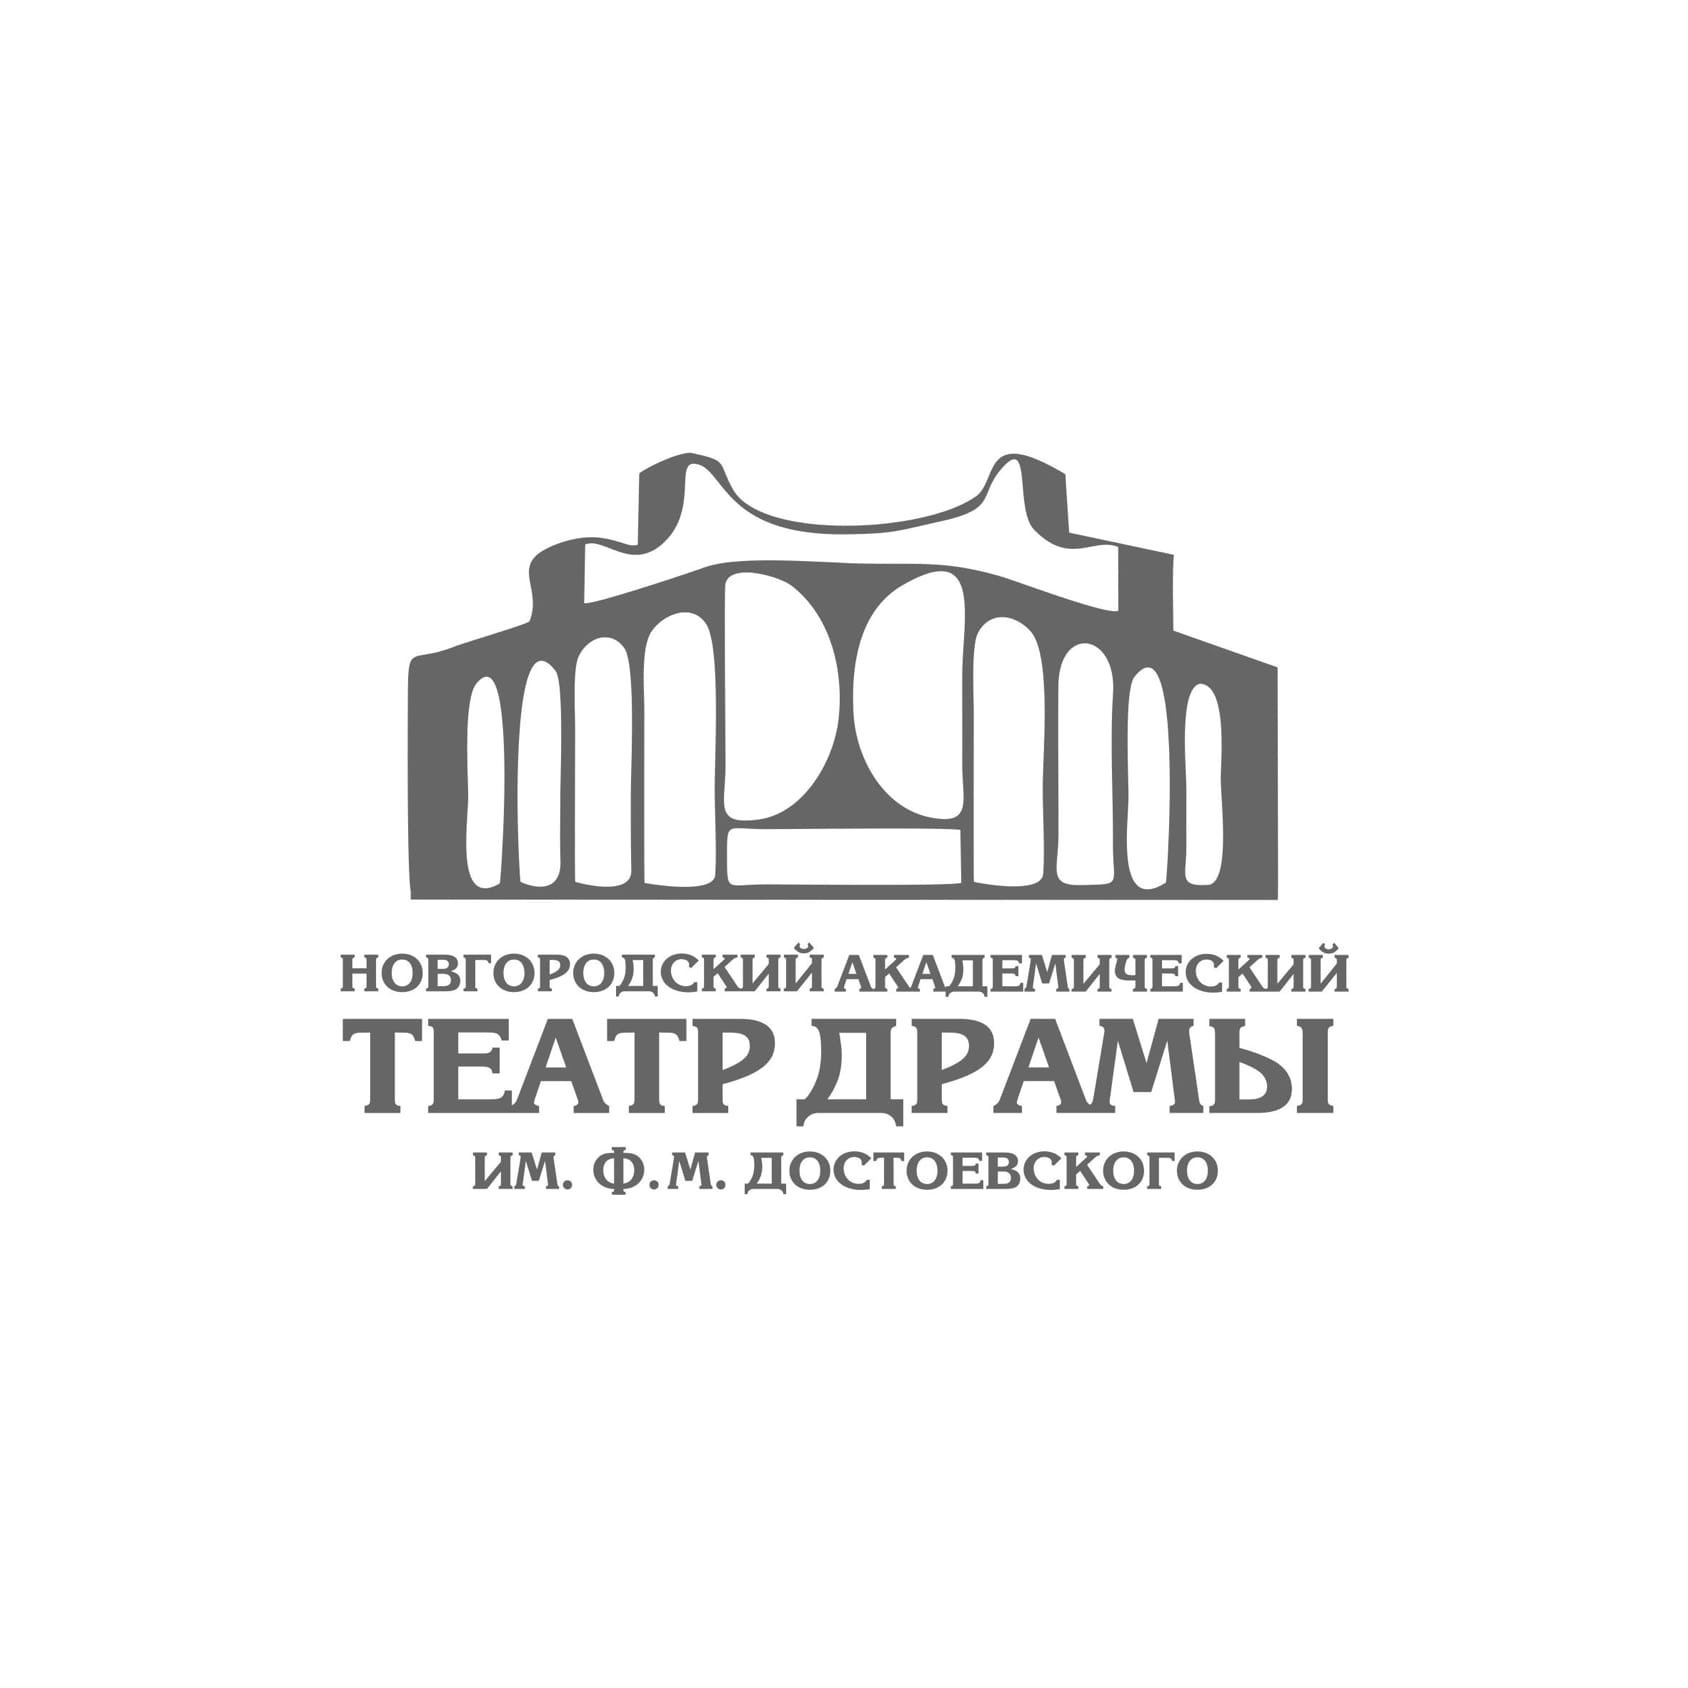 Театр драмы им. Ф.М. Достоевского